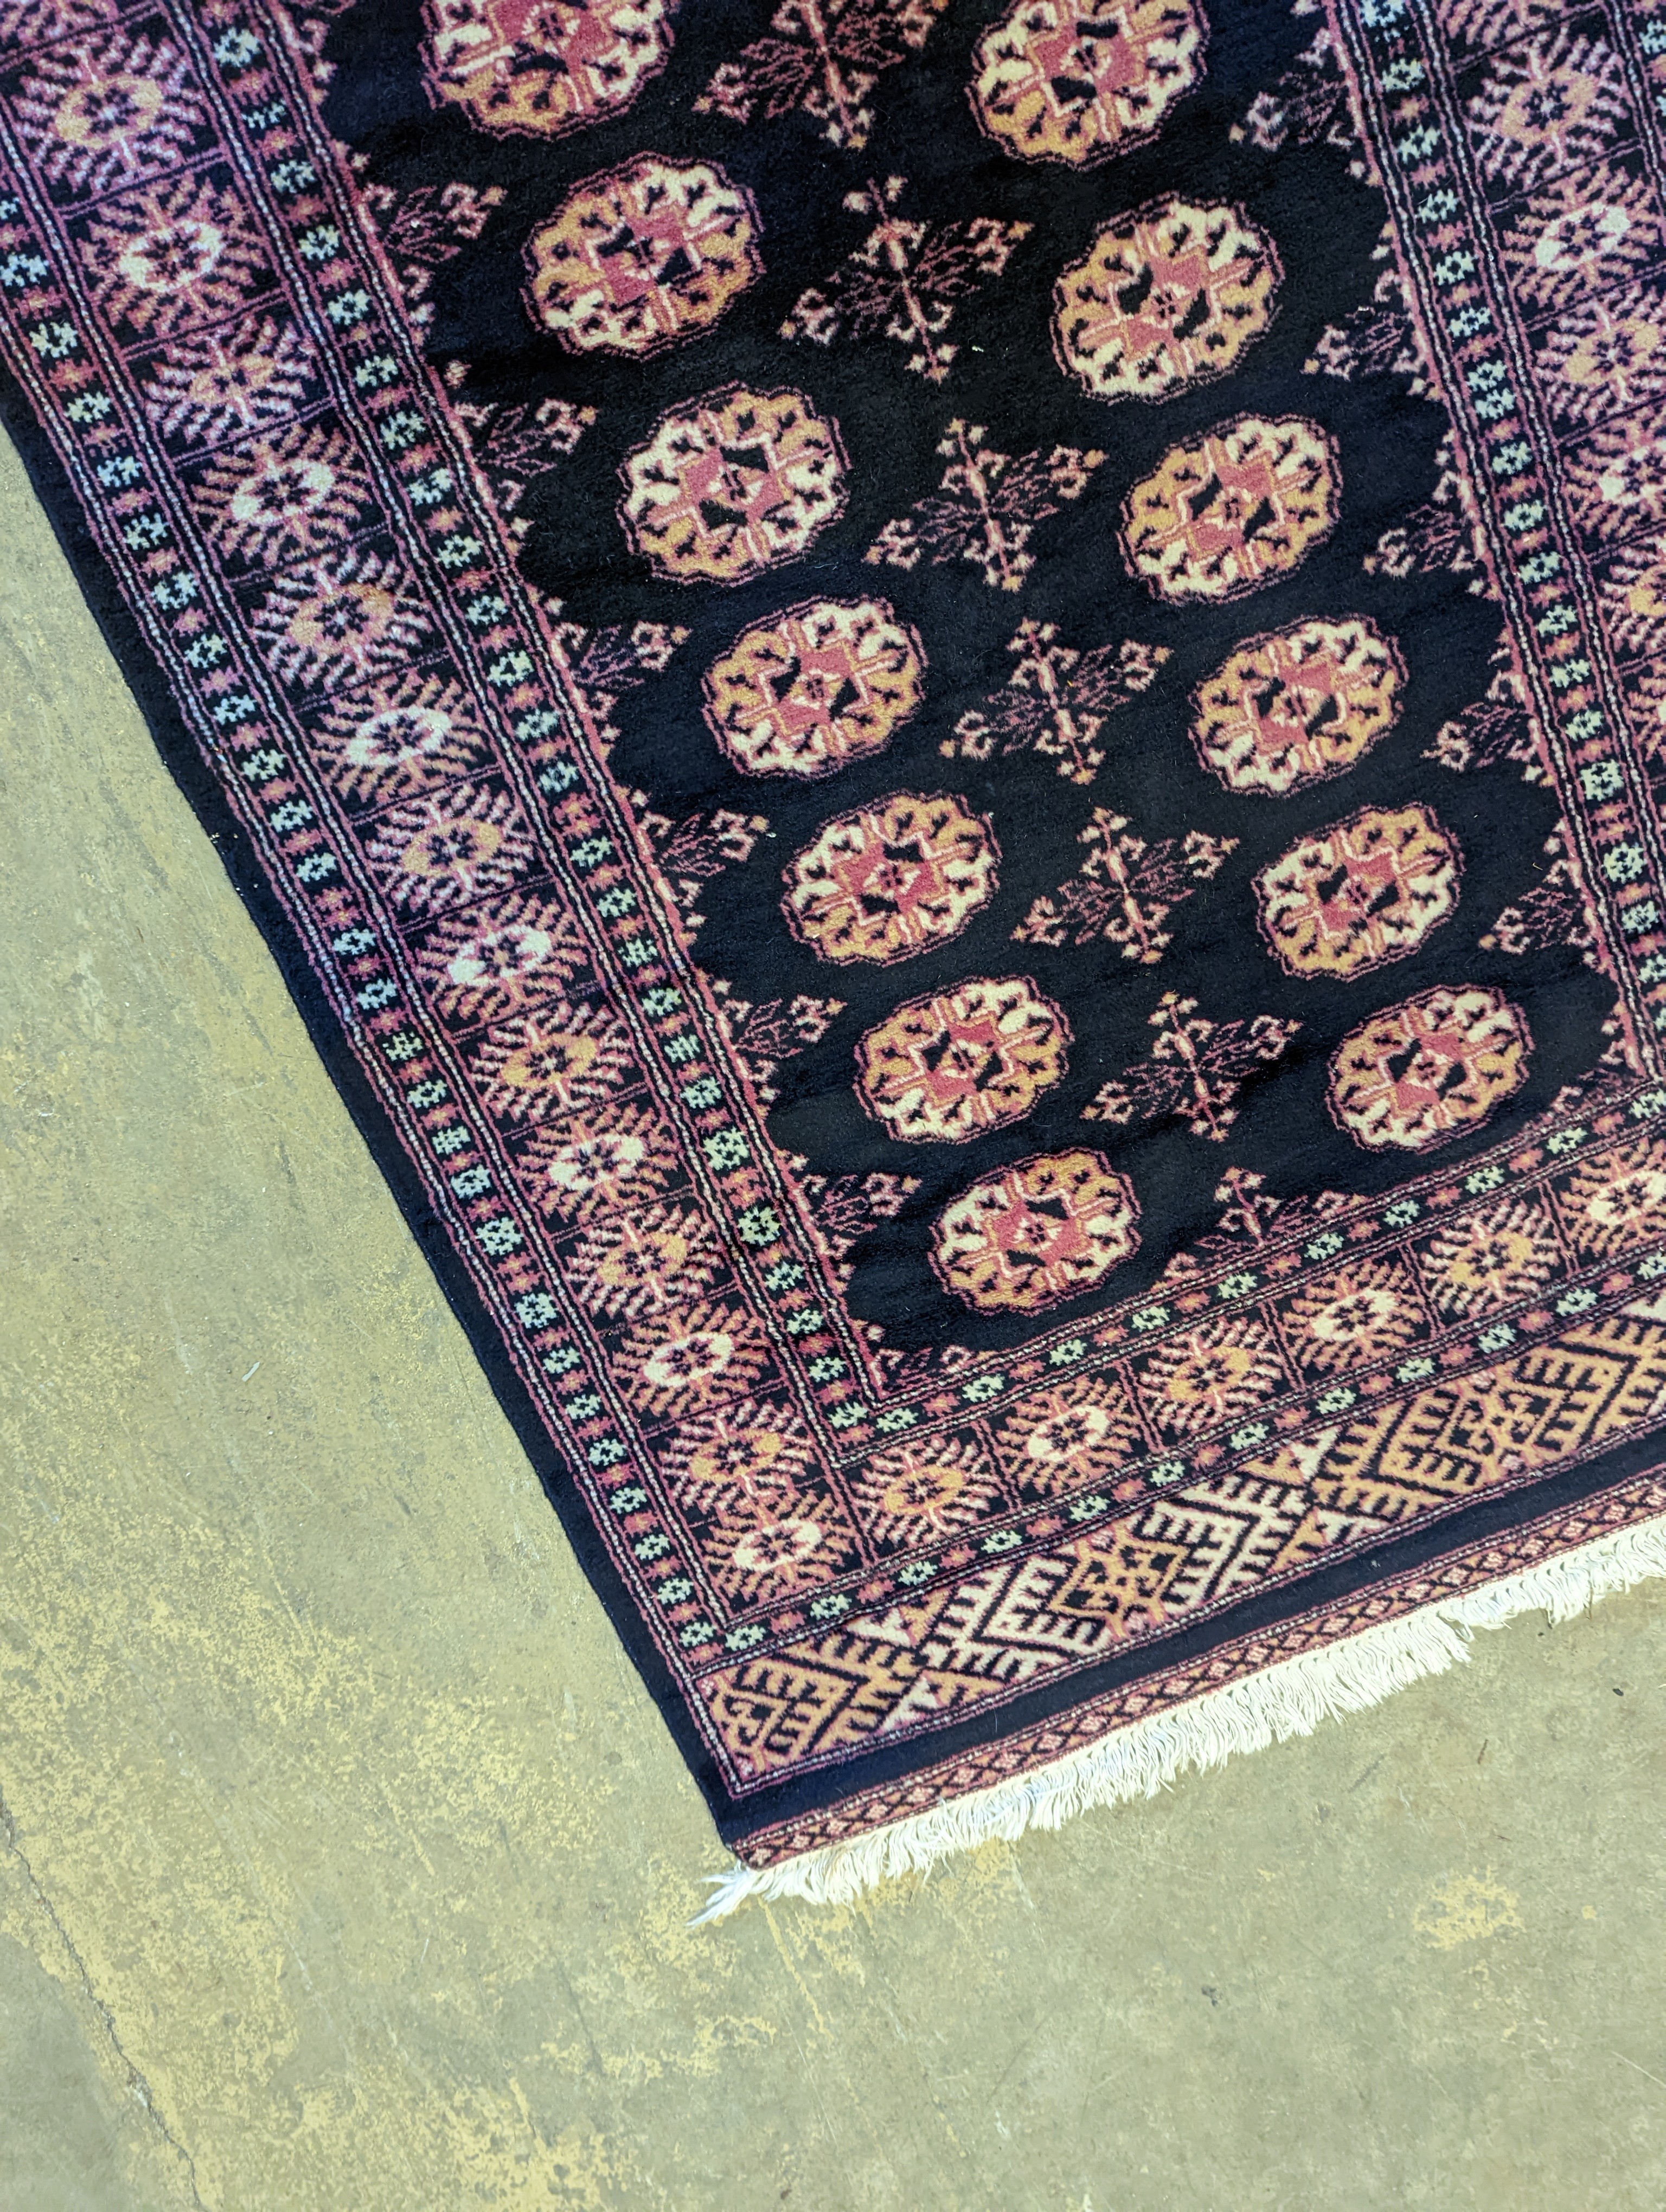 A Bokhara design blue ground rug, 160 x 98cm